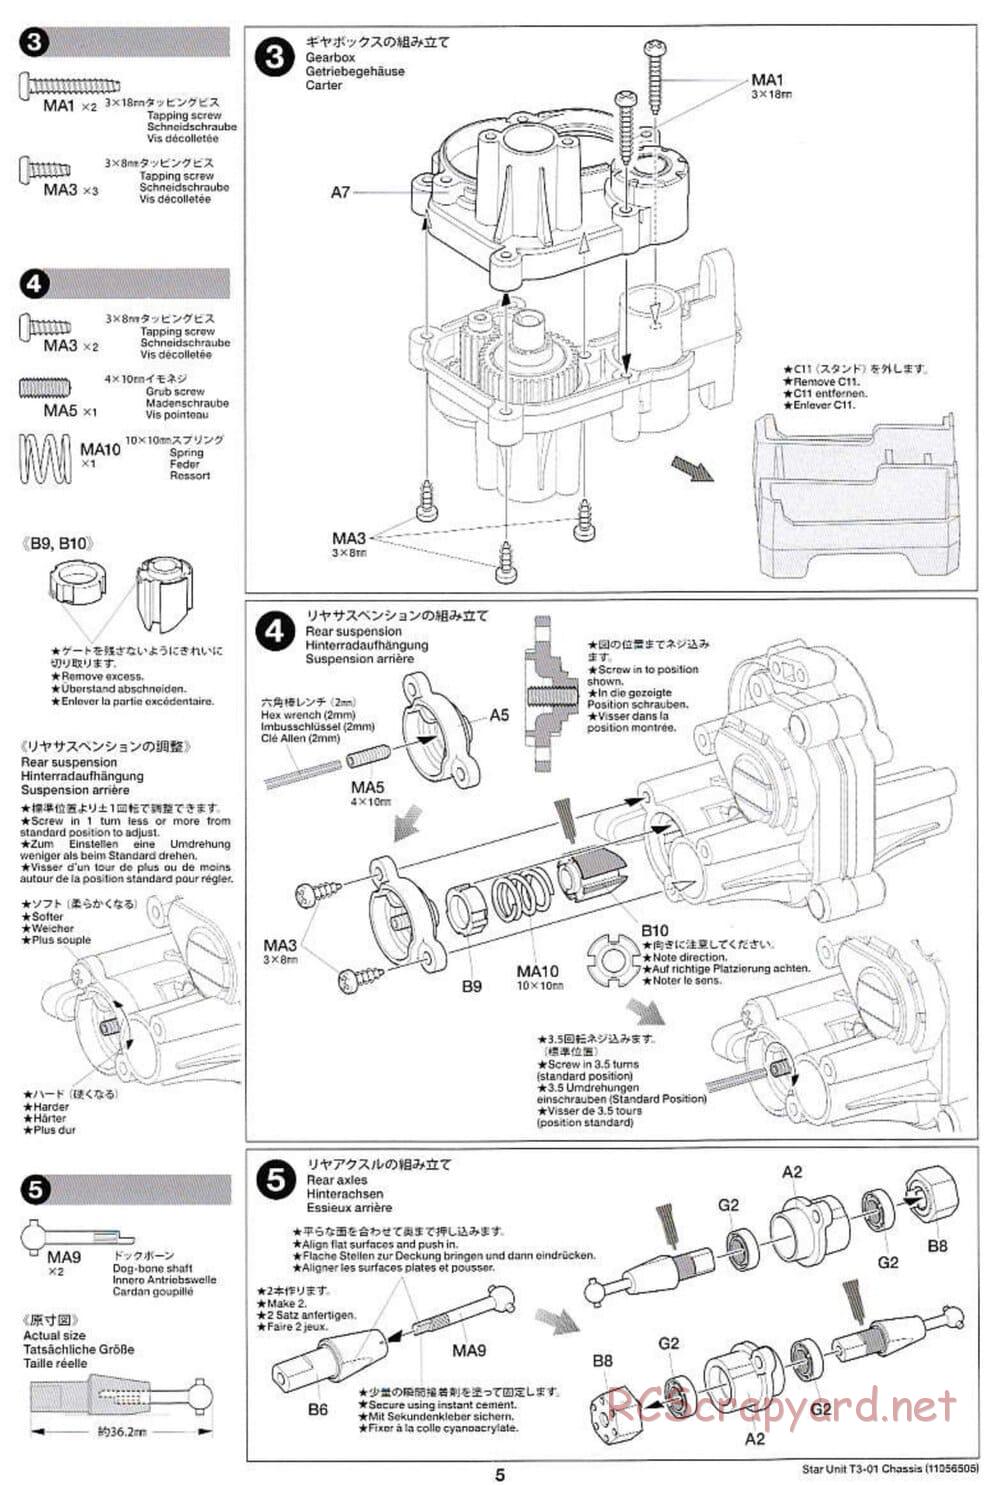 Tamiya - T3-01 Chassis - Manual - Page 5